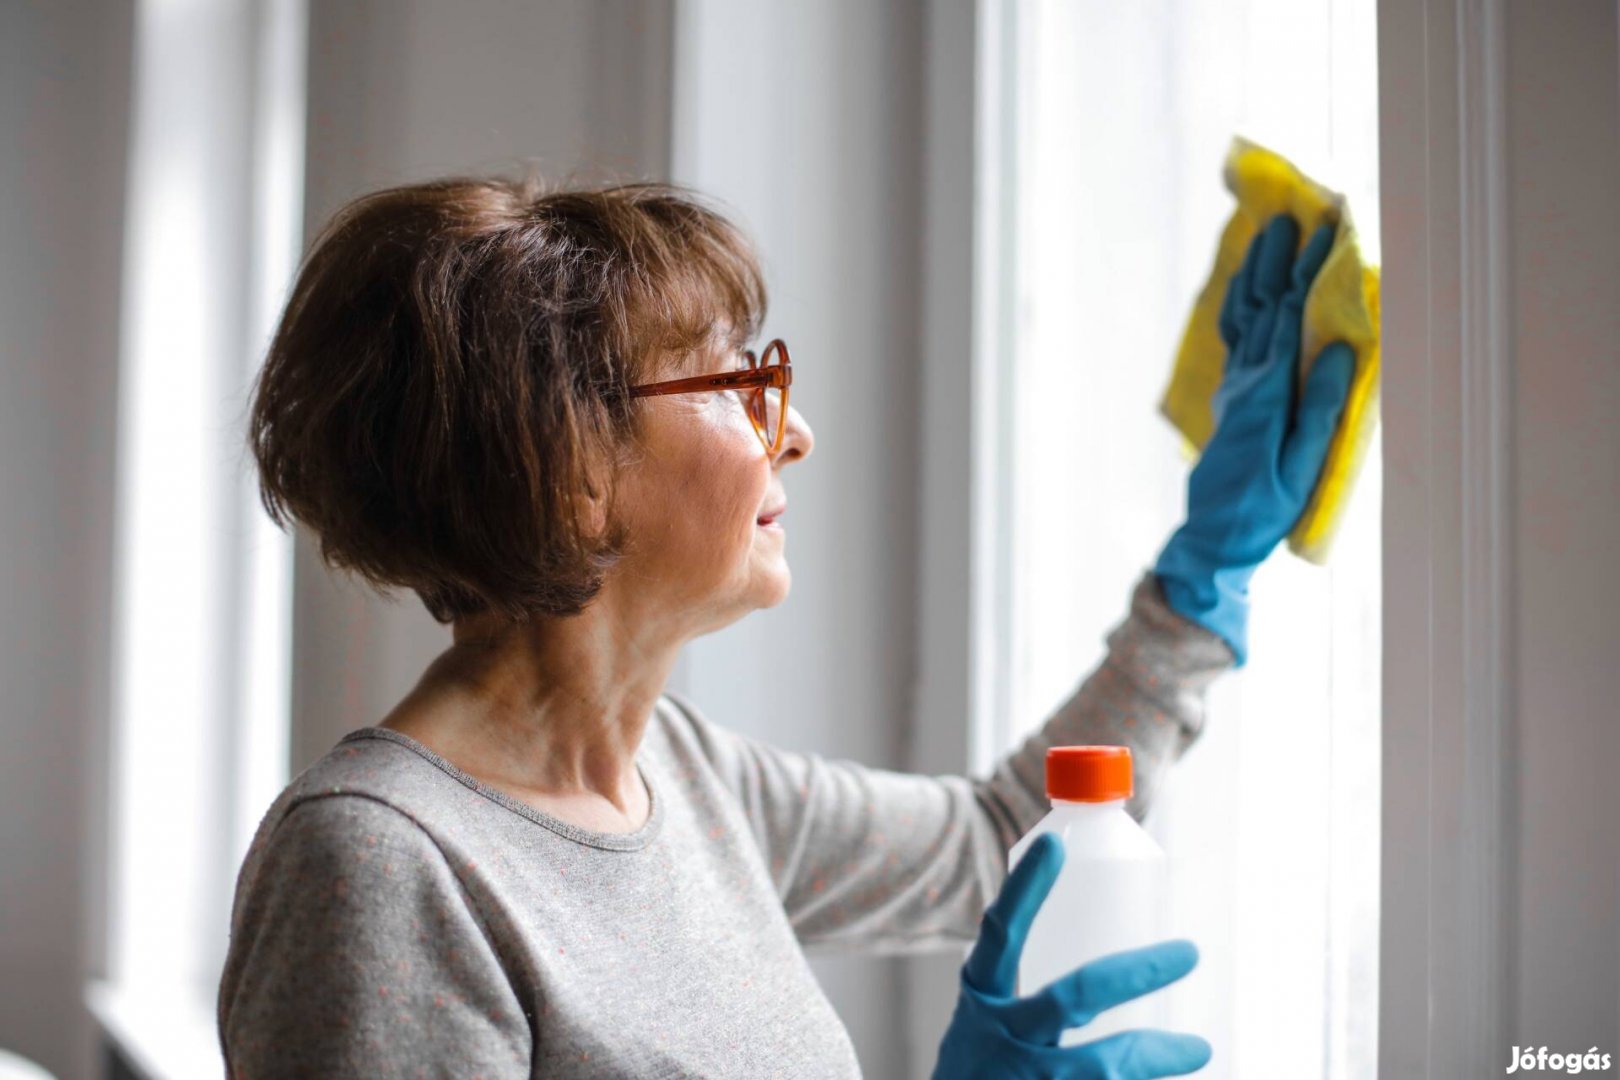 Idősek otthona takarító munkatársat keres